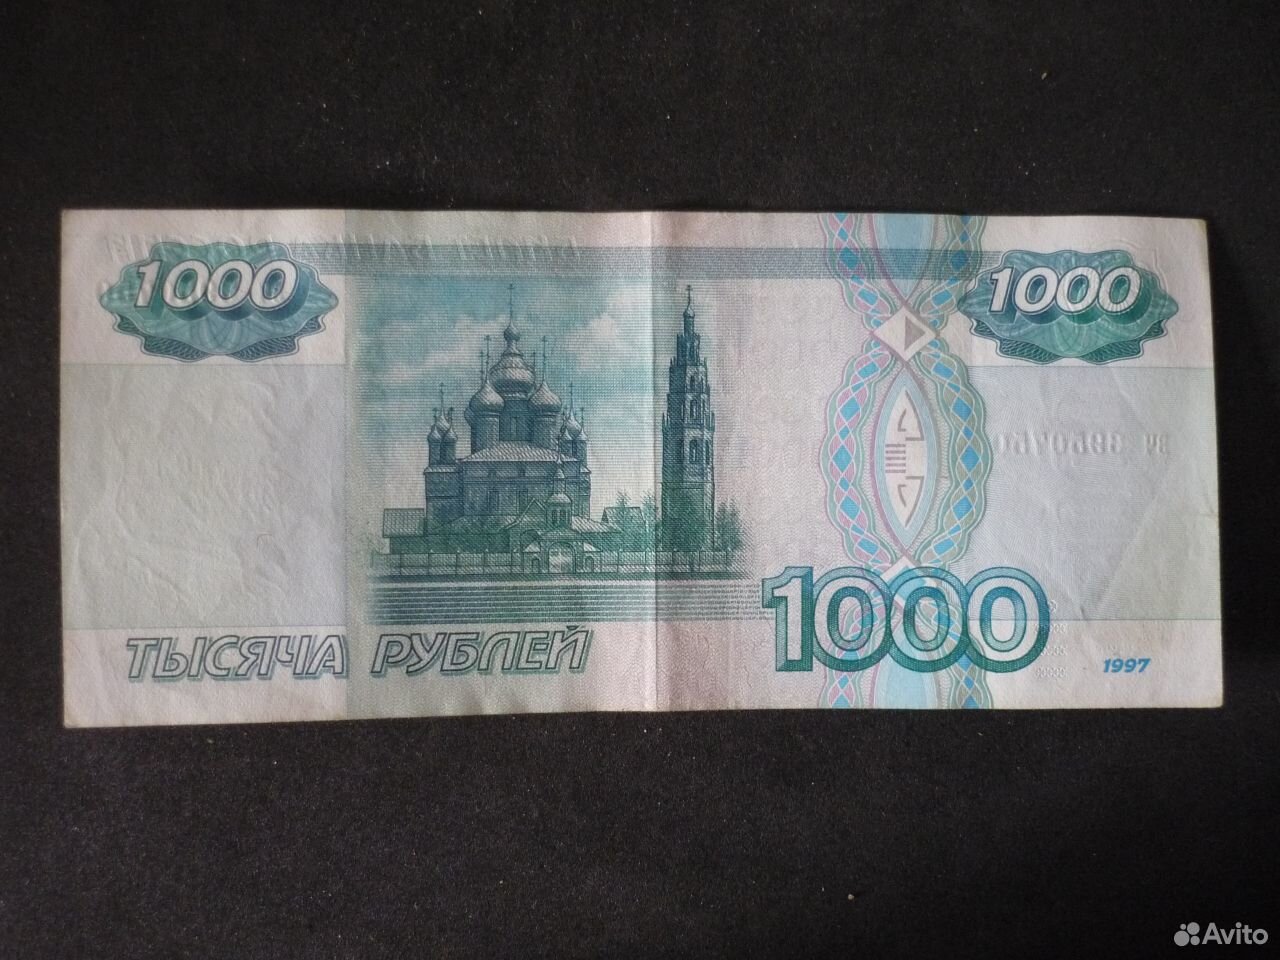 Астрахань на купюре. Банкнота с Астраханью. Почему на купюрах 1997